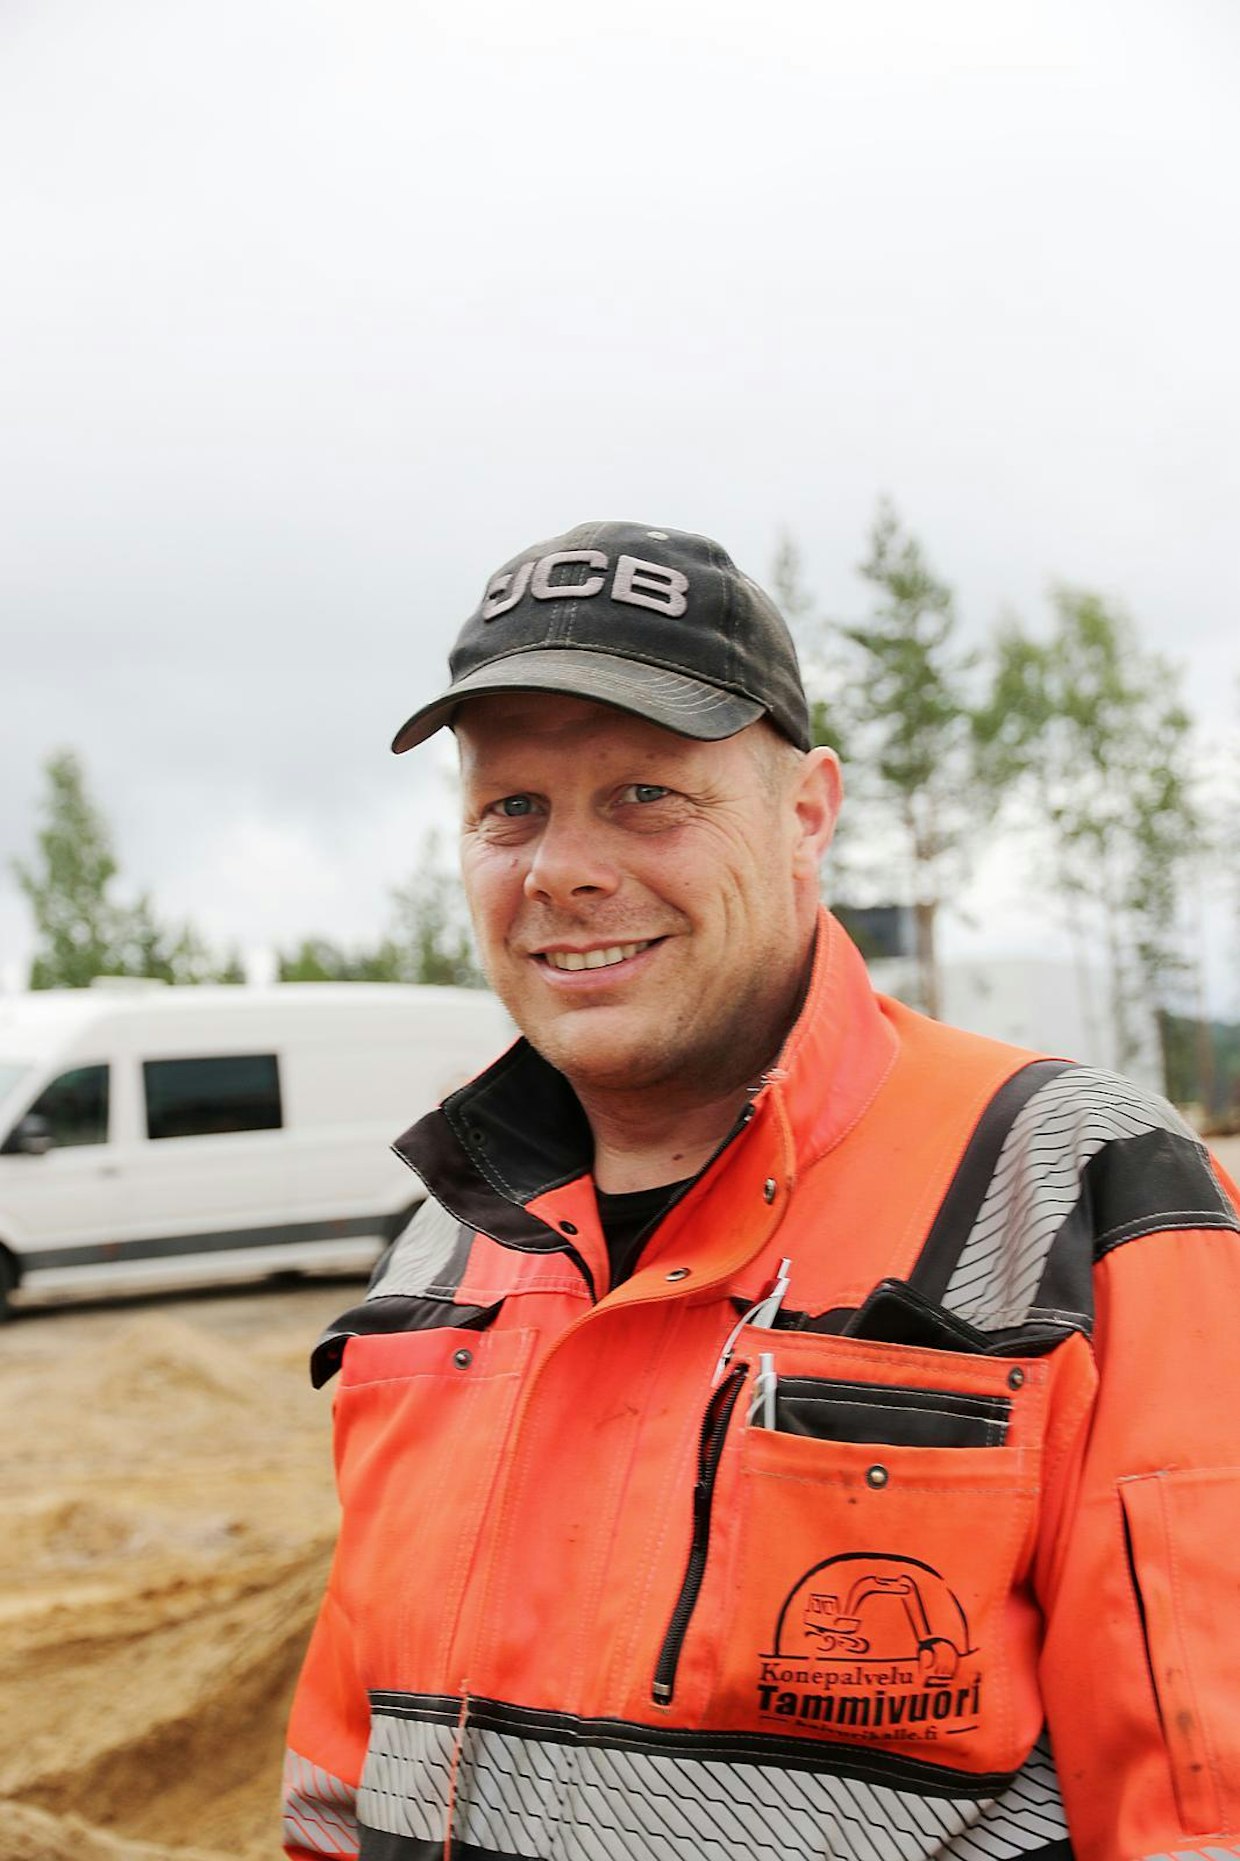 Muuramelainen Kalle Tammivuori urakoi pääosin pohjarakentamisen parissa. Mies on mieltynyt JCB:n käyttömukavuuteen ja hydrauliikkaan.